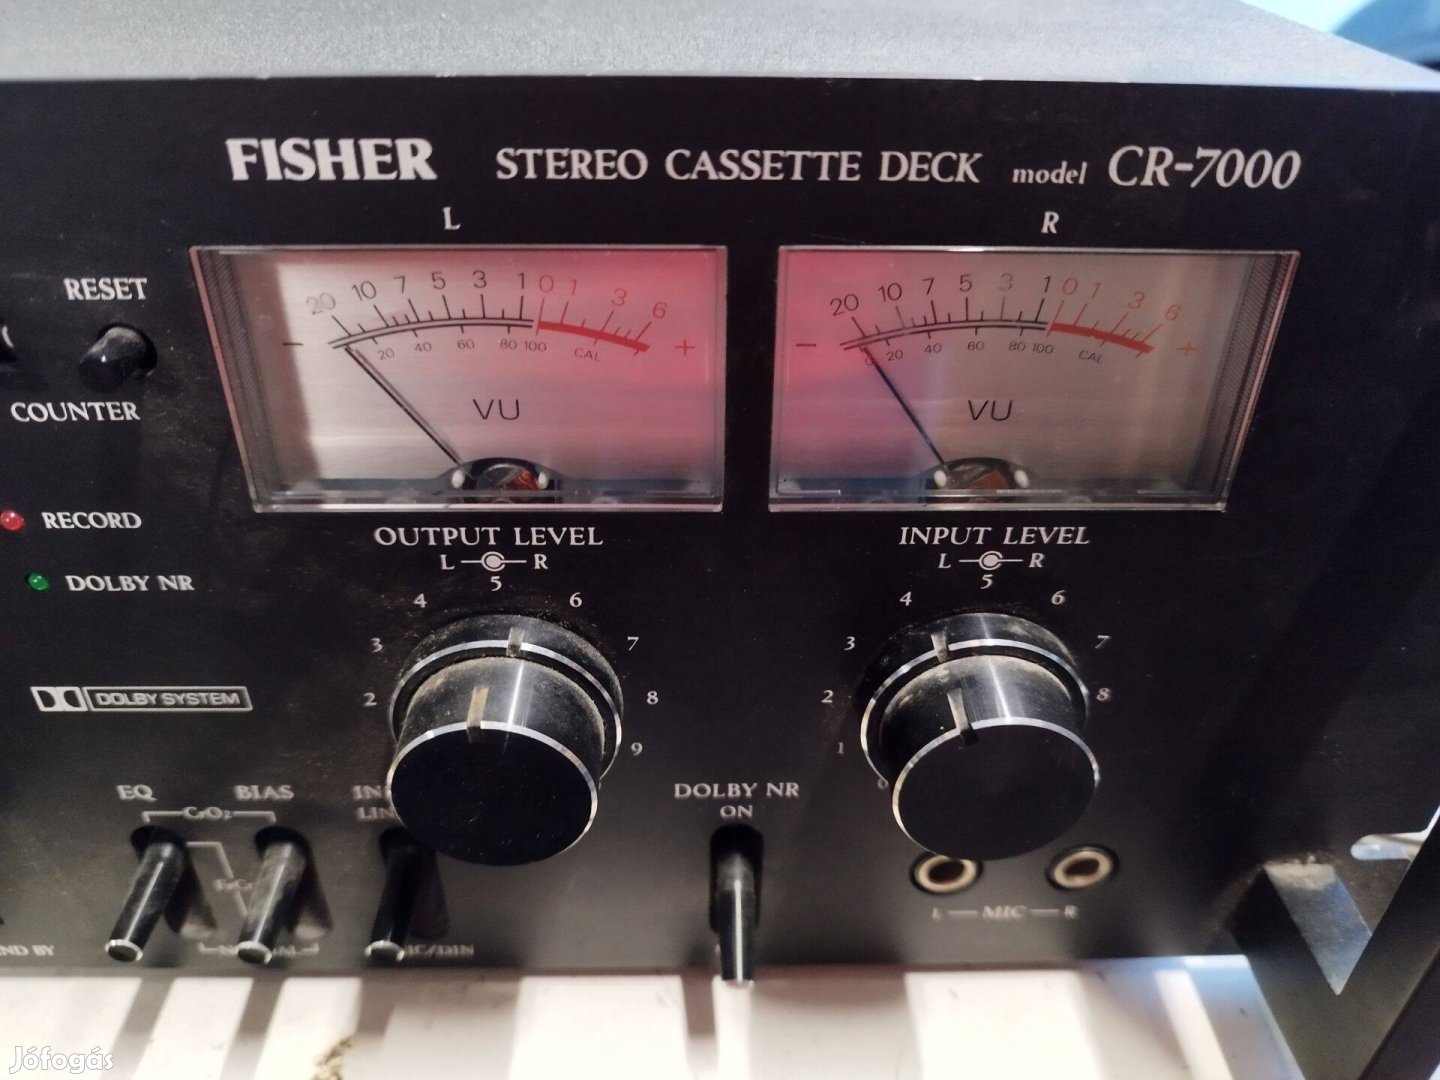 Fischer CR-7000 deck, kazettás magnó ára fix!